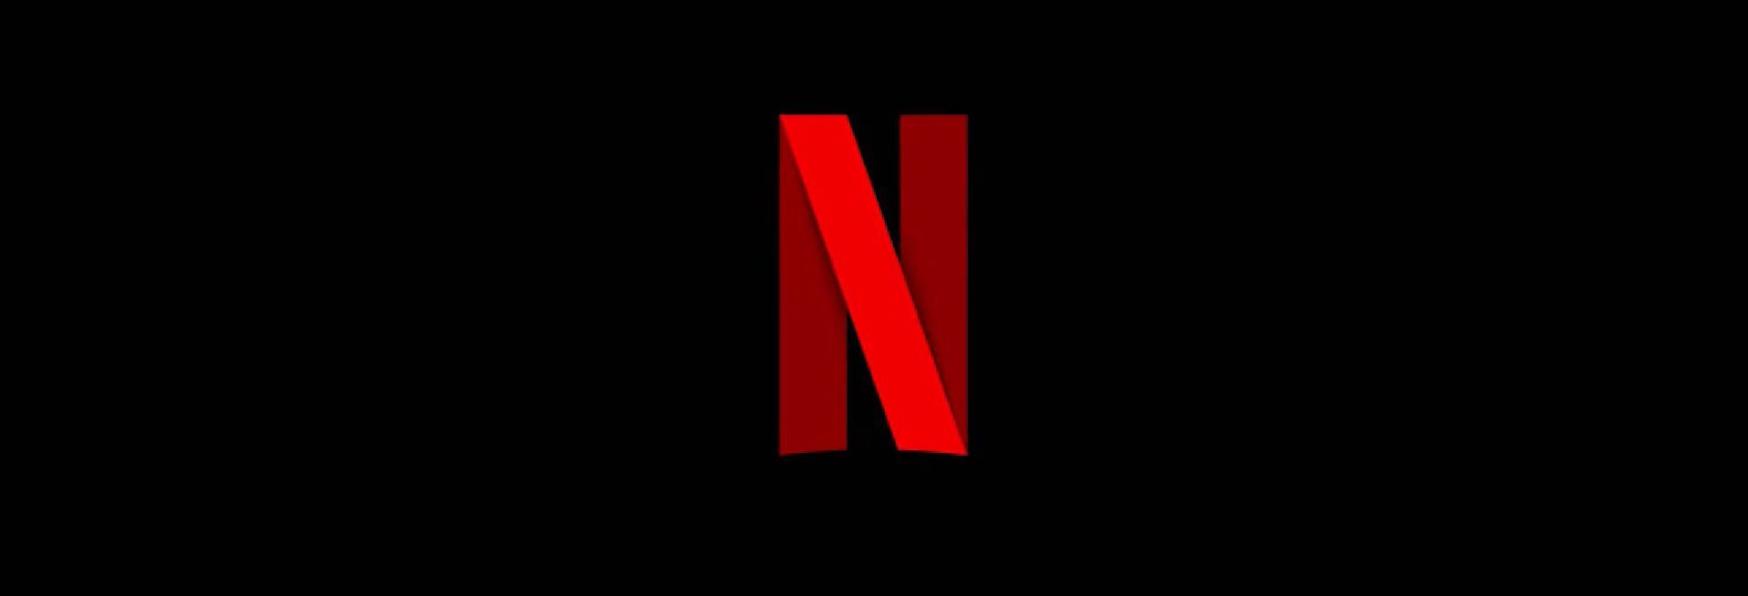 Netflix abbandona l'attuale metodologia di Rilascio? Ecco cosa Potrebbe Cambiare in Futuro